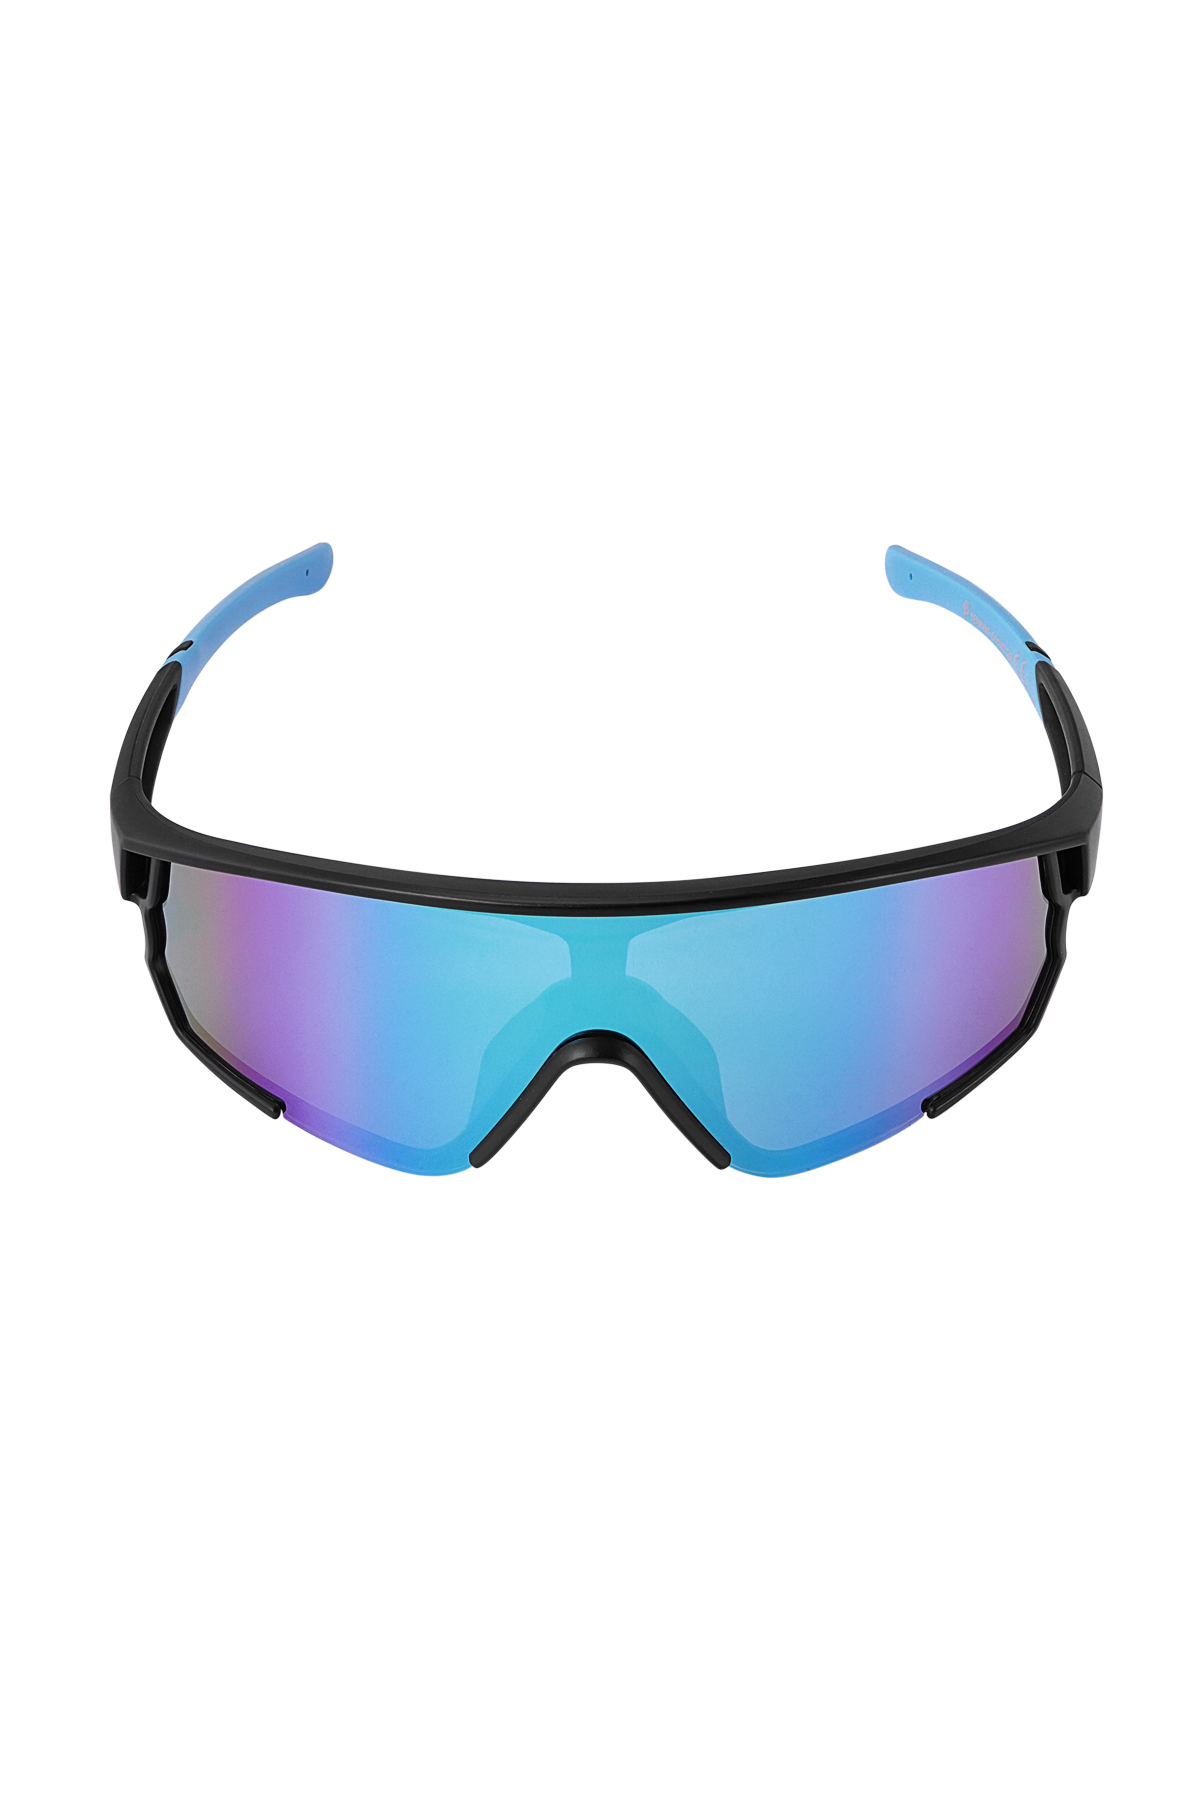 Sonnenbrille mit farbigen Gläsern – schwarz/blau h5 Bild6